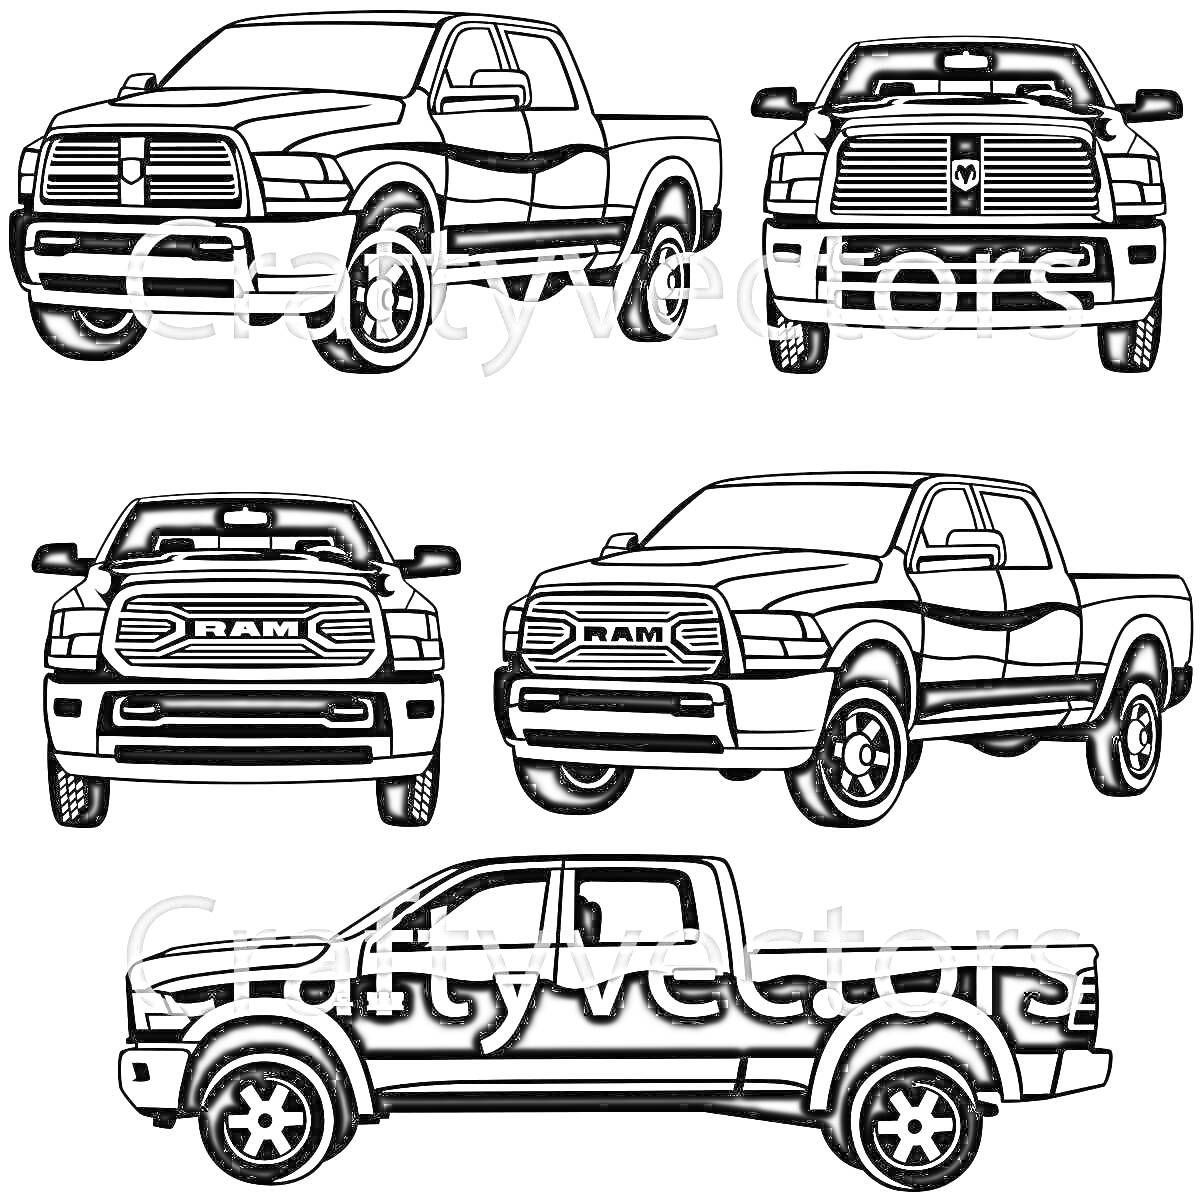 Раскраска Раскраска с пятью изображениями Dodge Ram, вид спереди, сбоку и трехчетвертной вид